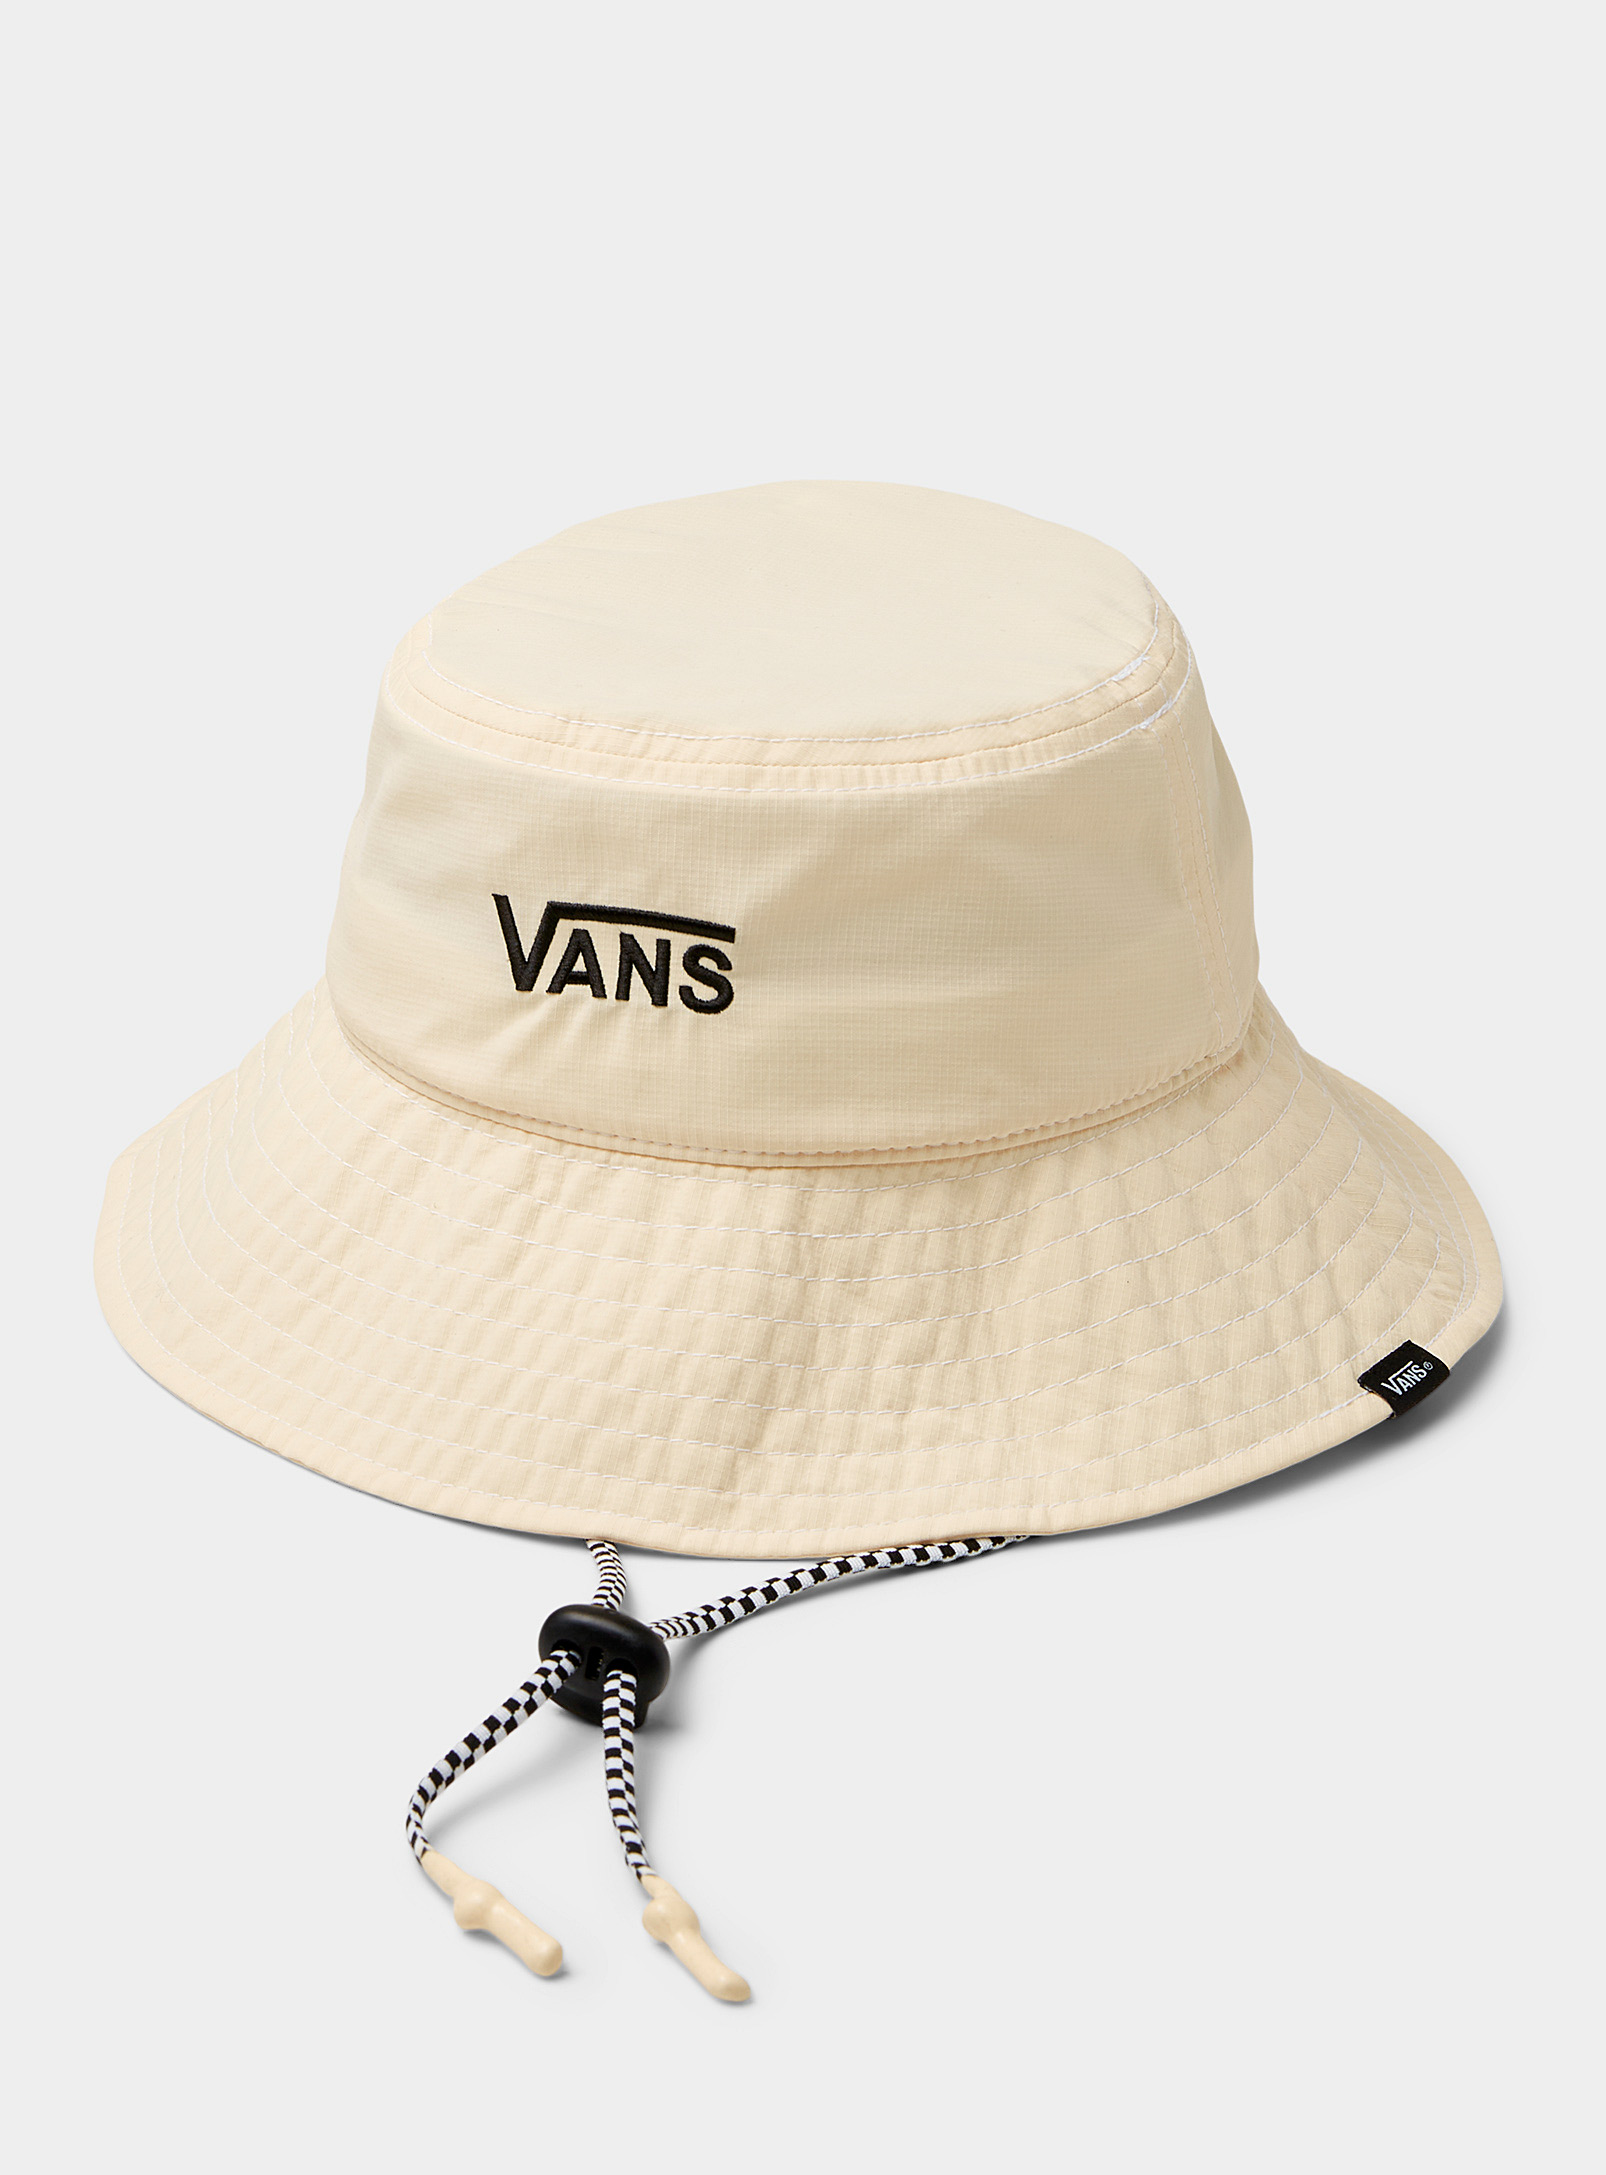 Vans - Women's Signature nylon bucket hat